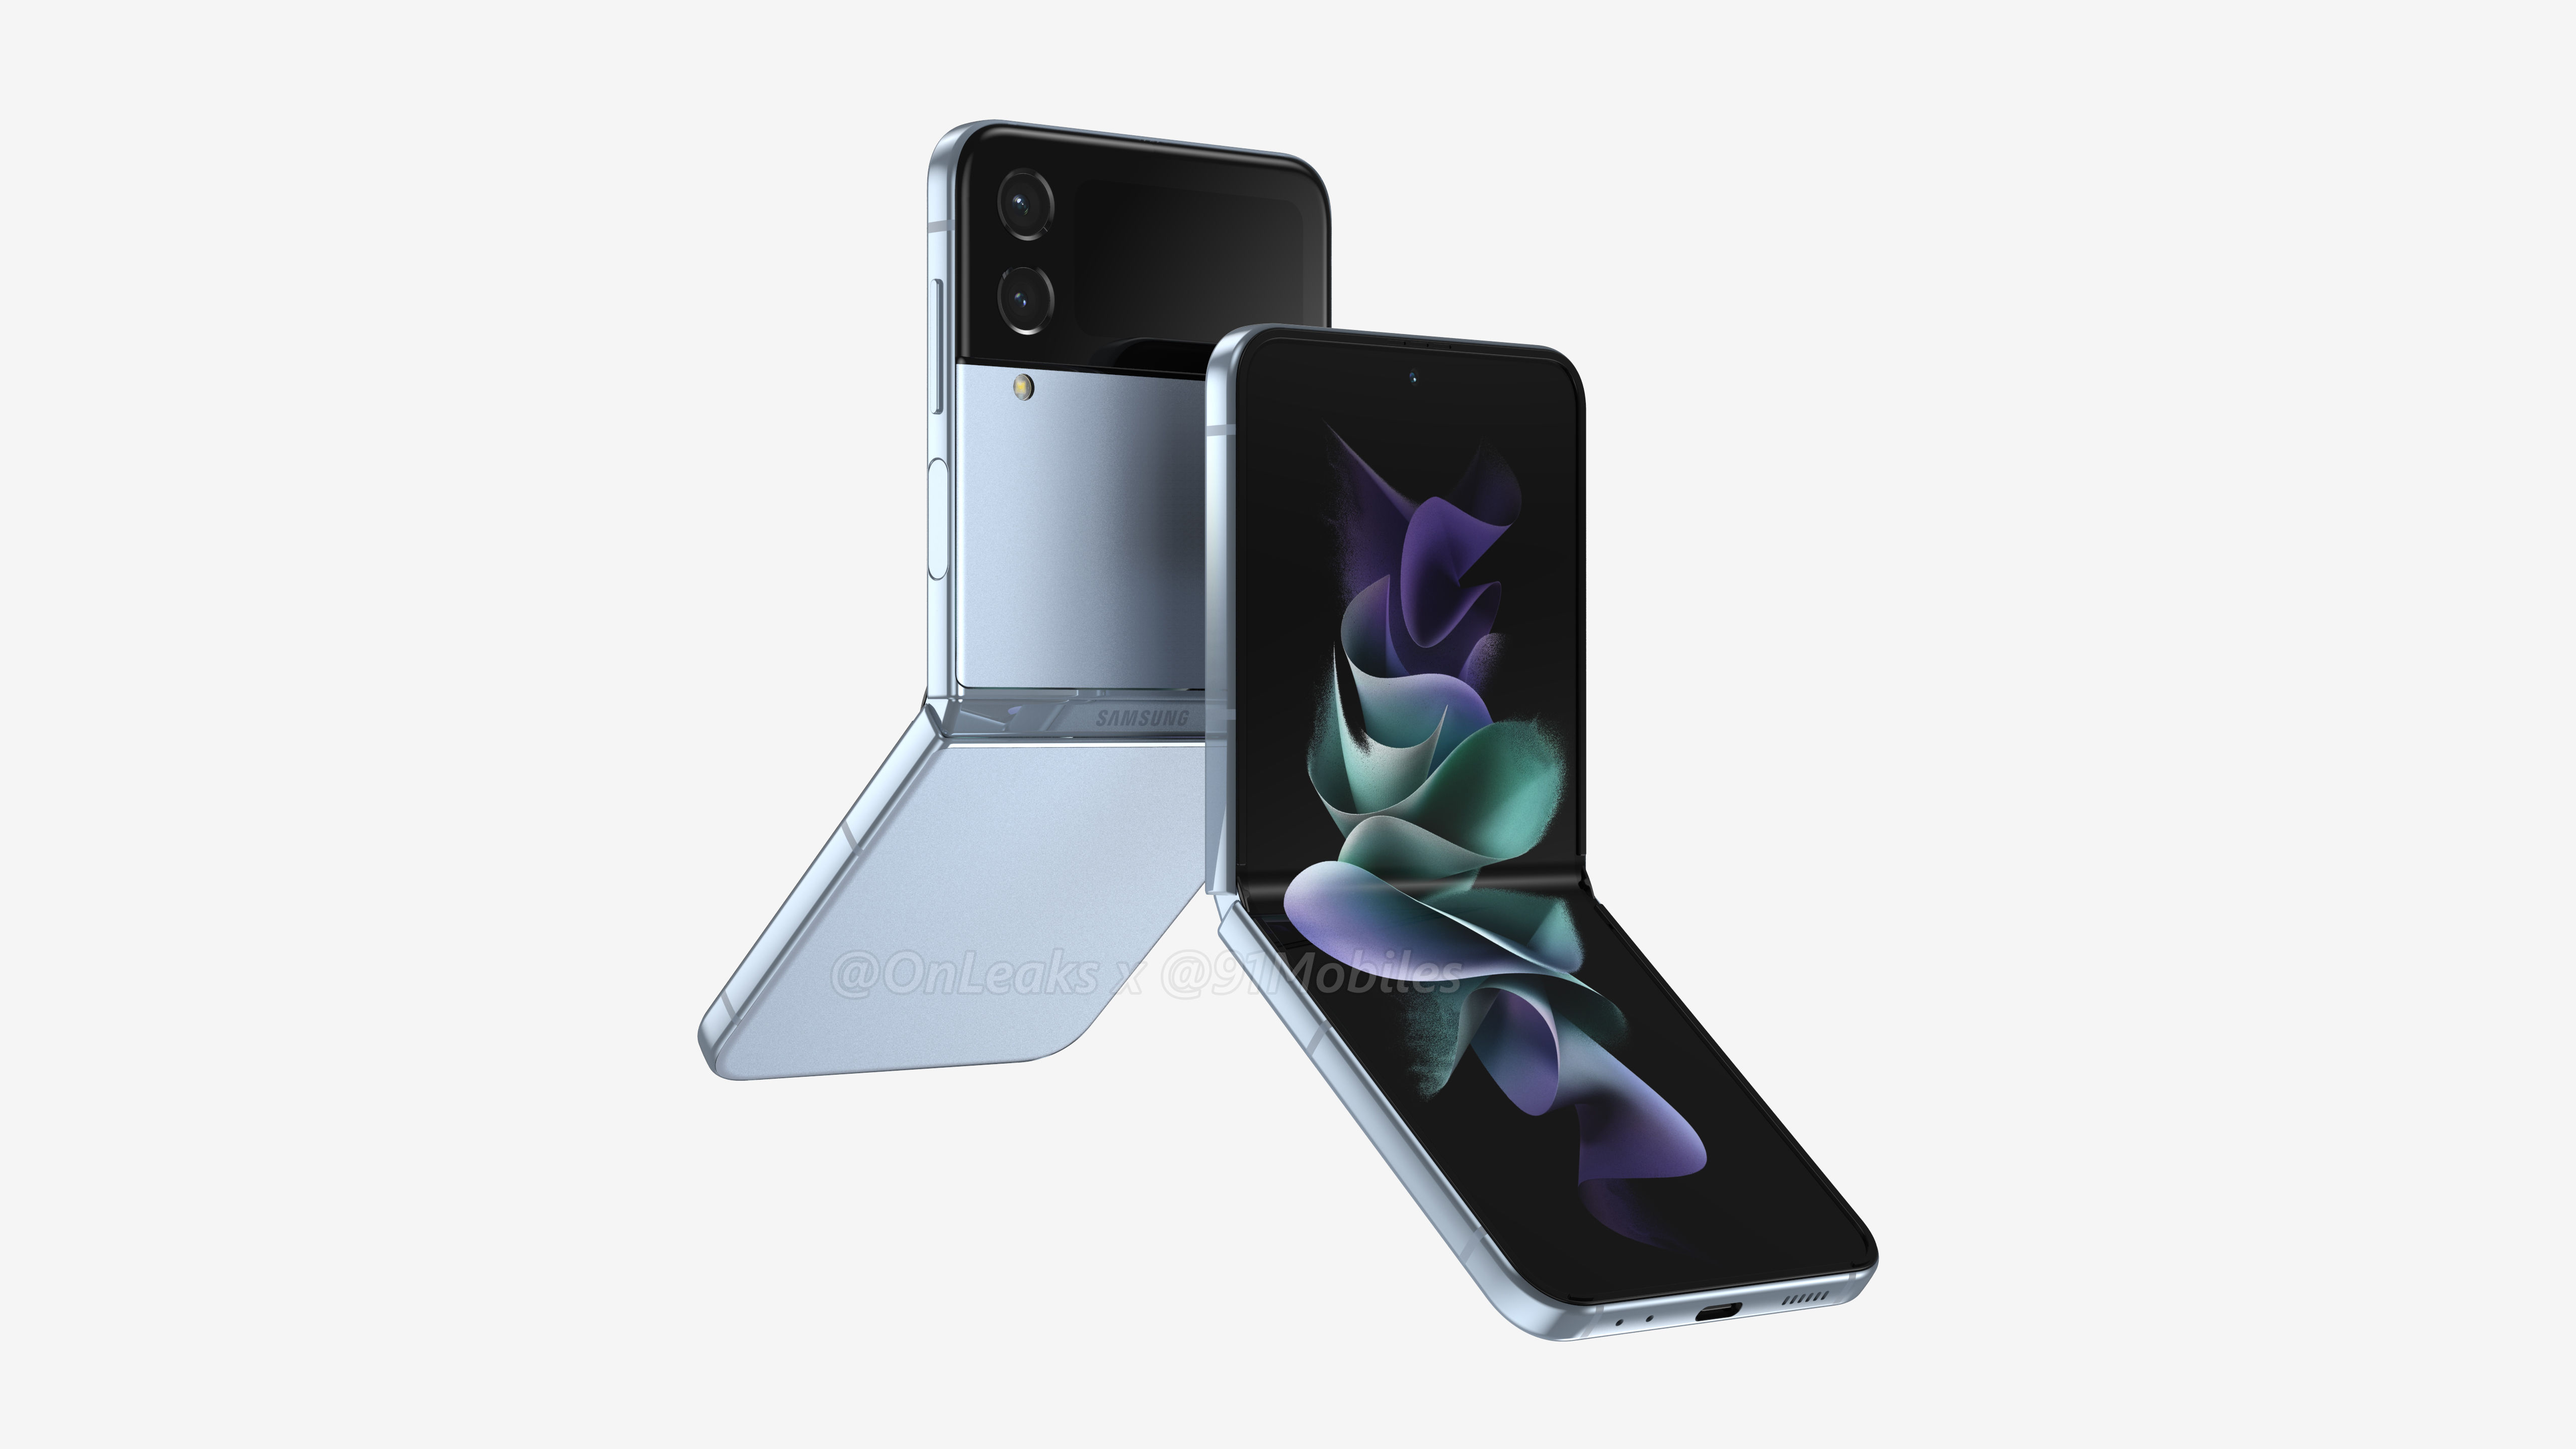 Ecco come apparirà il Galaxy Z Flip 4: il nuovo clamshell di Samsung con uno schermo flessibile